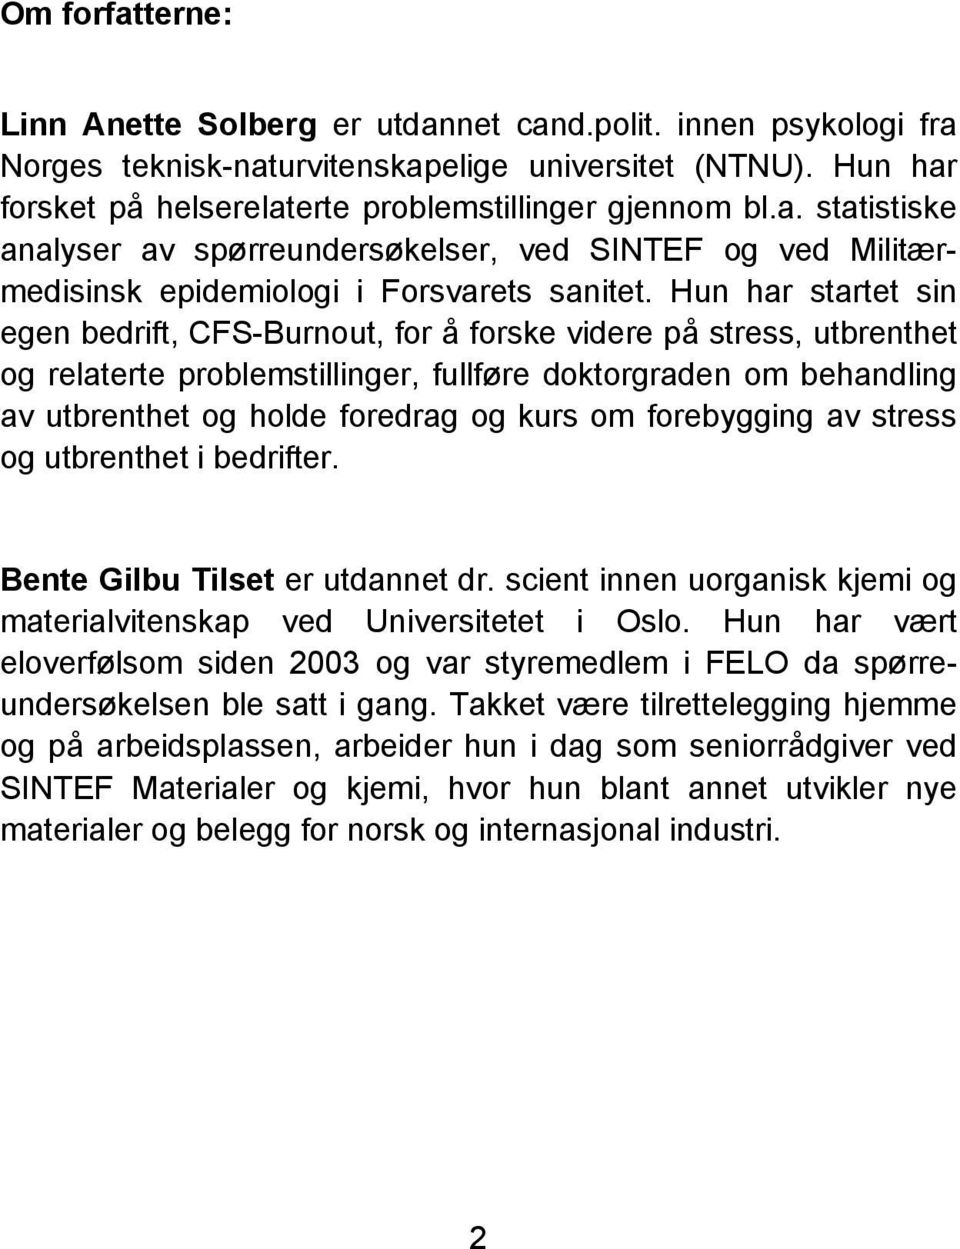 forebygging av stress og utbrenthet i bedrifter. Bente Gilbu Tilset er utdannet dr. scient innen uorganisk kjemi og materialvitenskap ved Universitetet i Oslo.